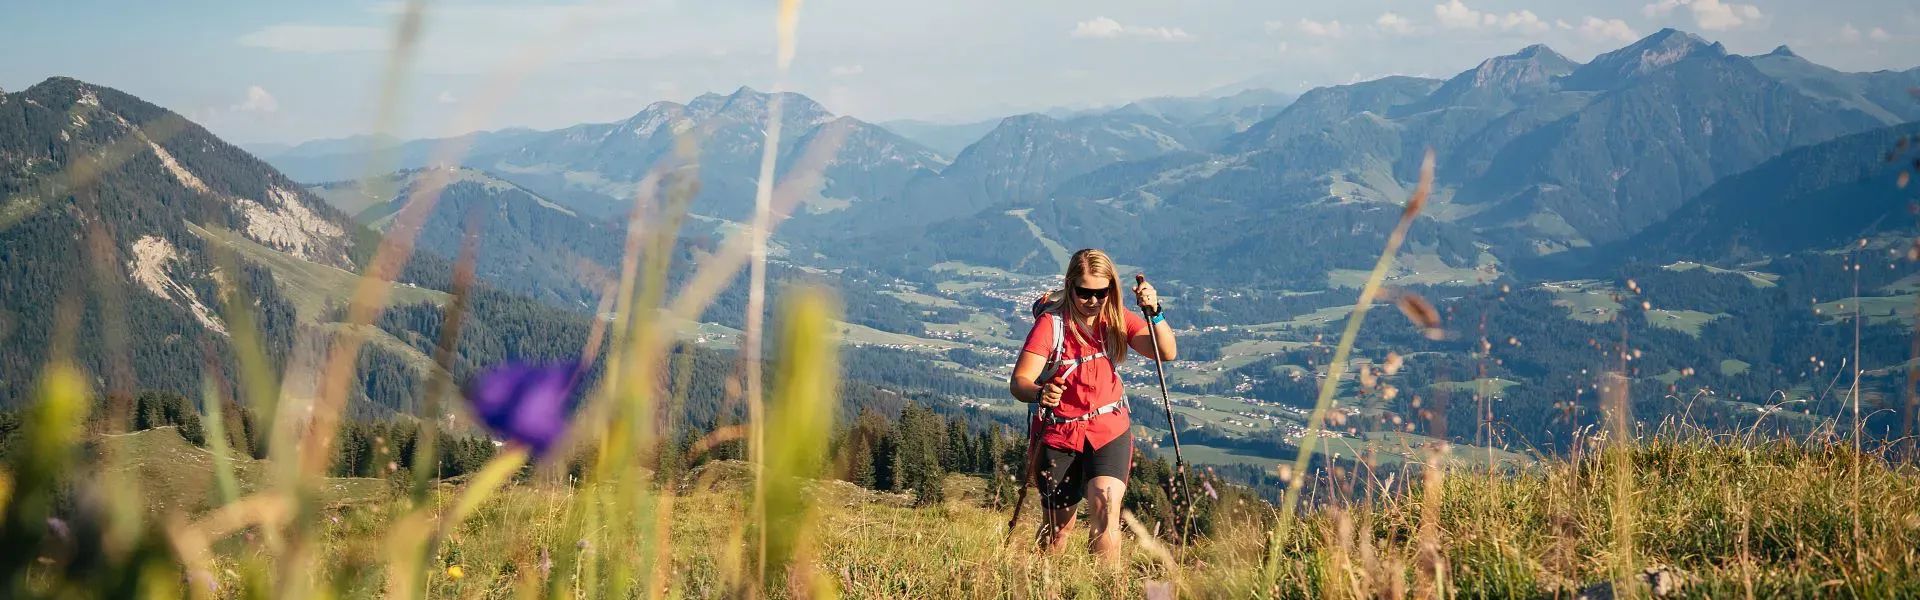 Kitzbüheler Alpen Hero Wandern Christina Foidl am Weg zum Gipfel des Baumooskogels im Hintergrund die Region St.Johann c Daniel Gollner